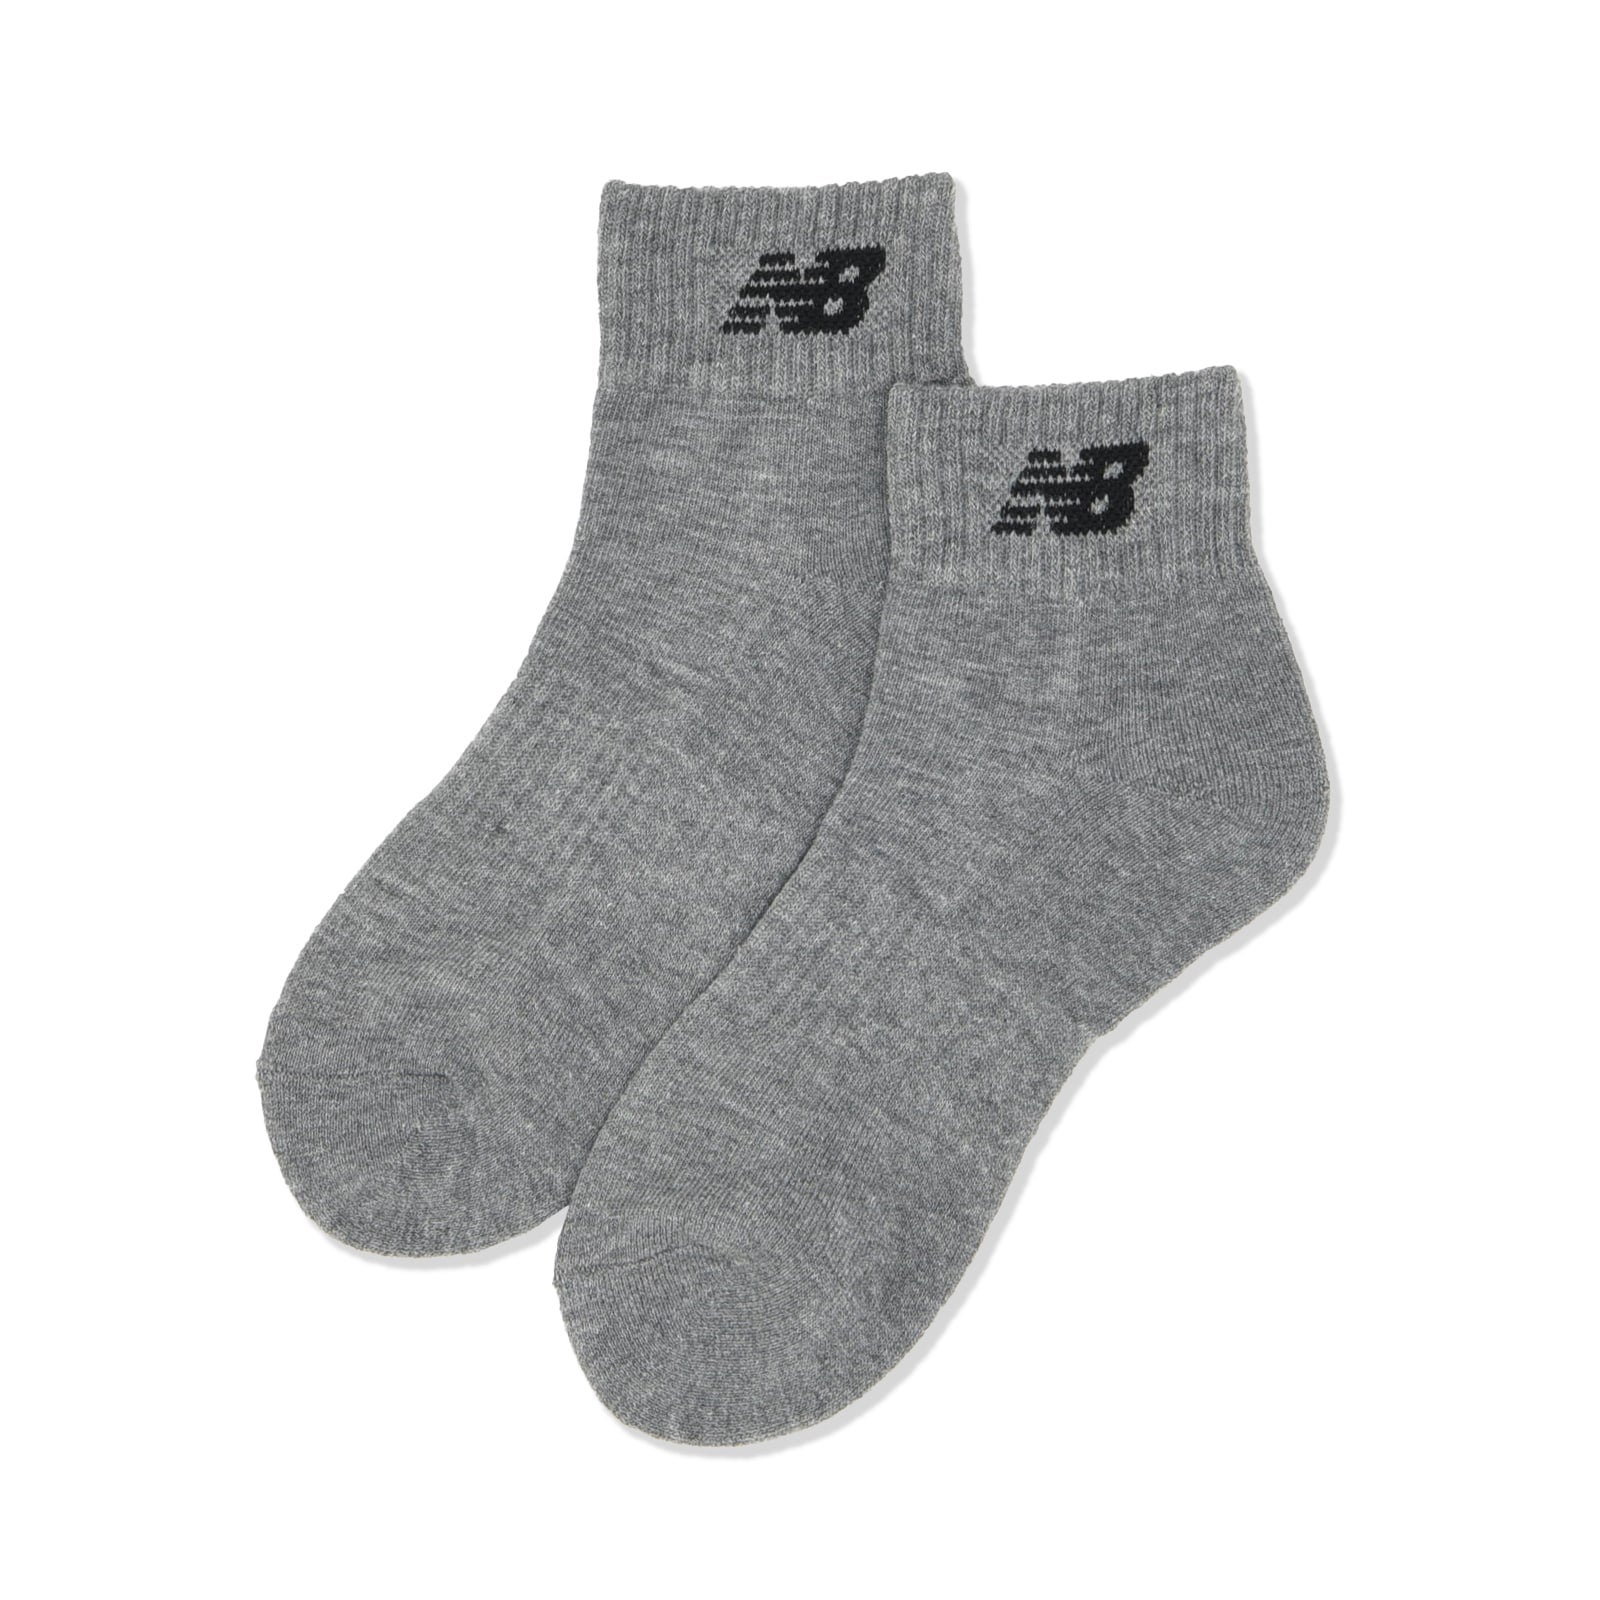 Junior 3P socks short length